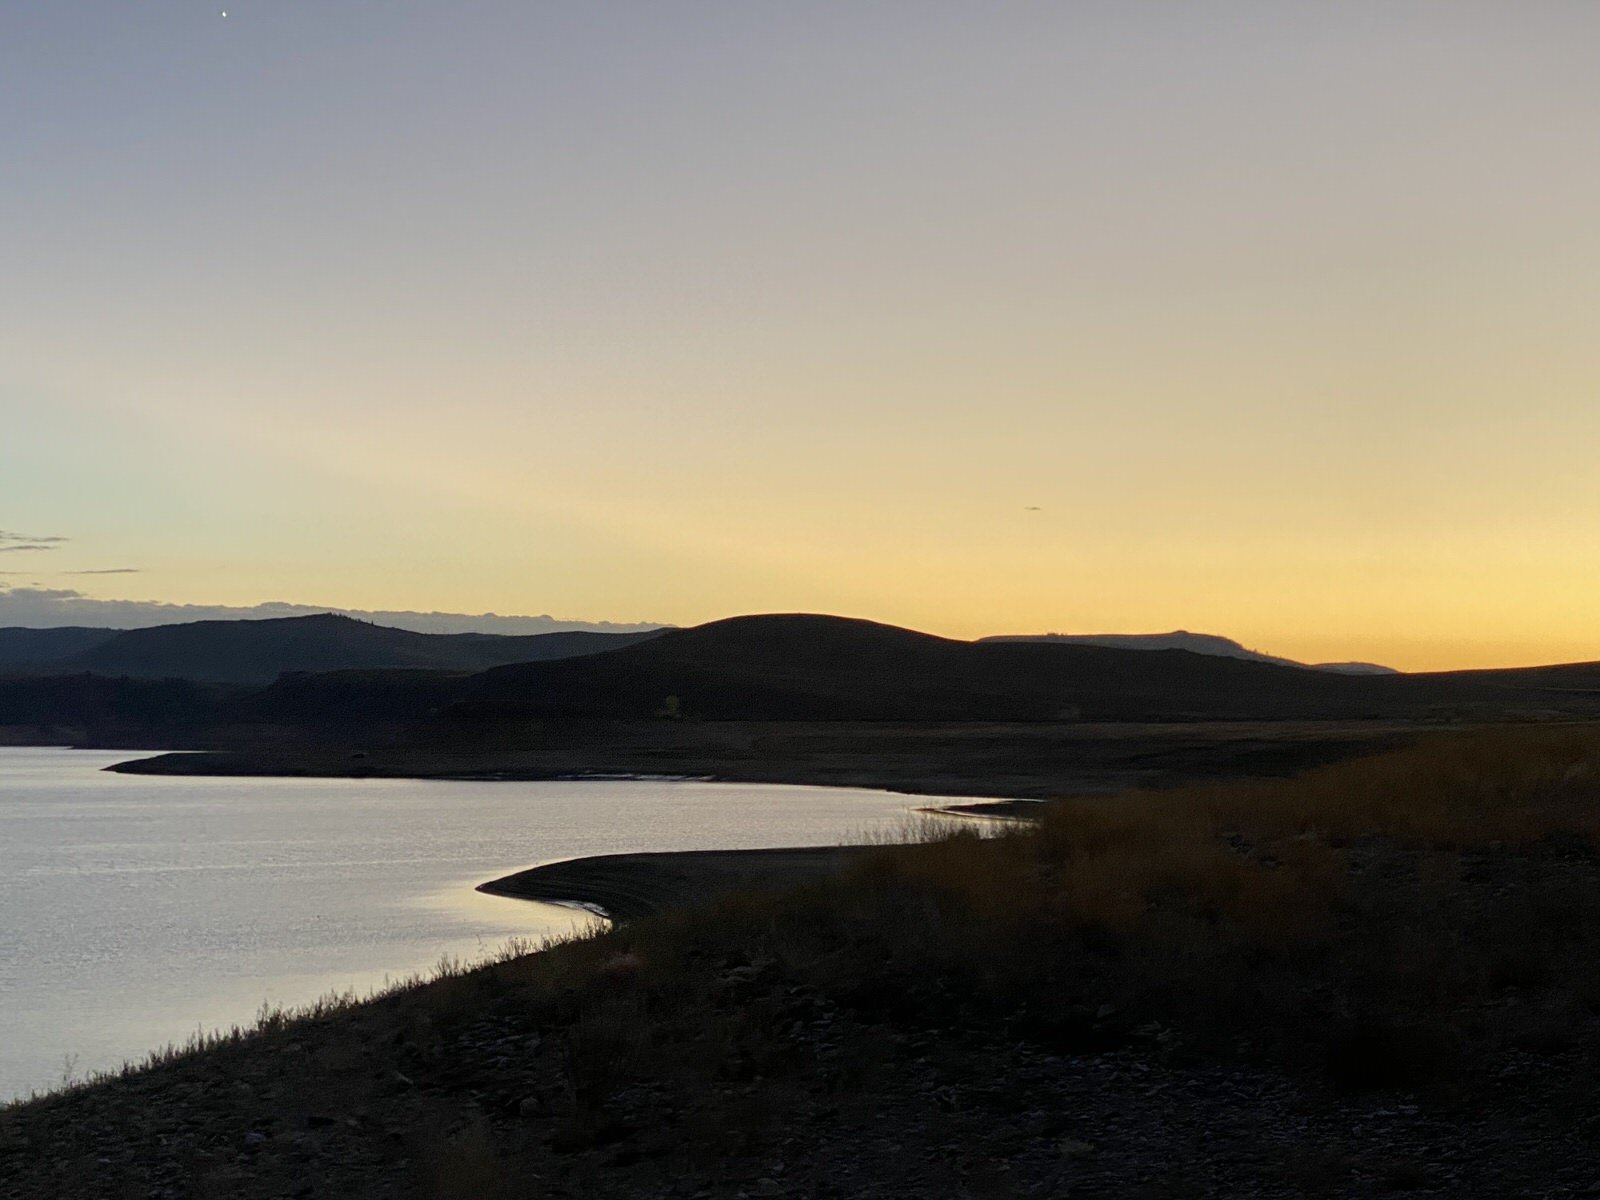 The lake at dusk....